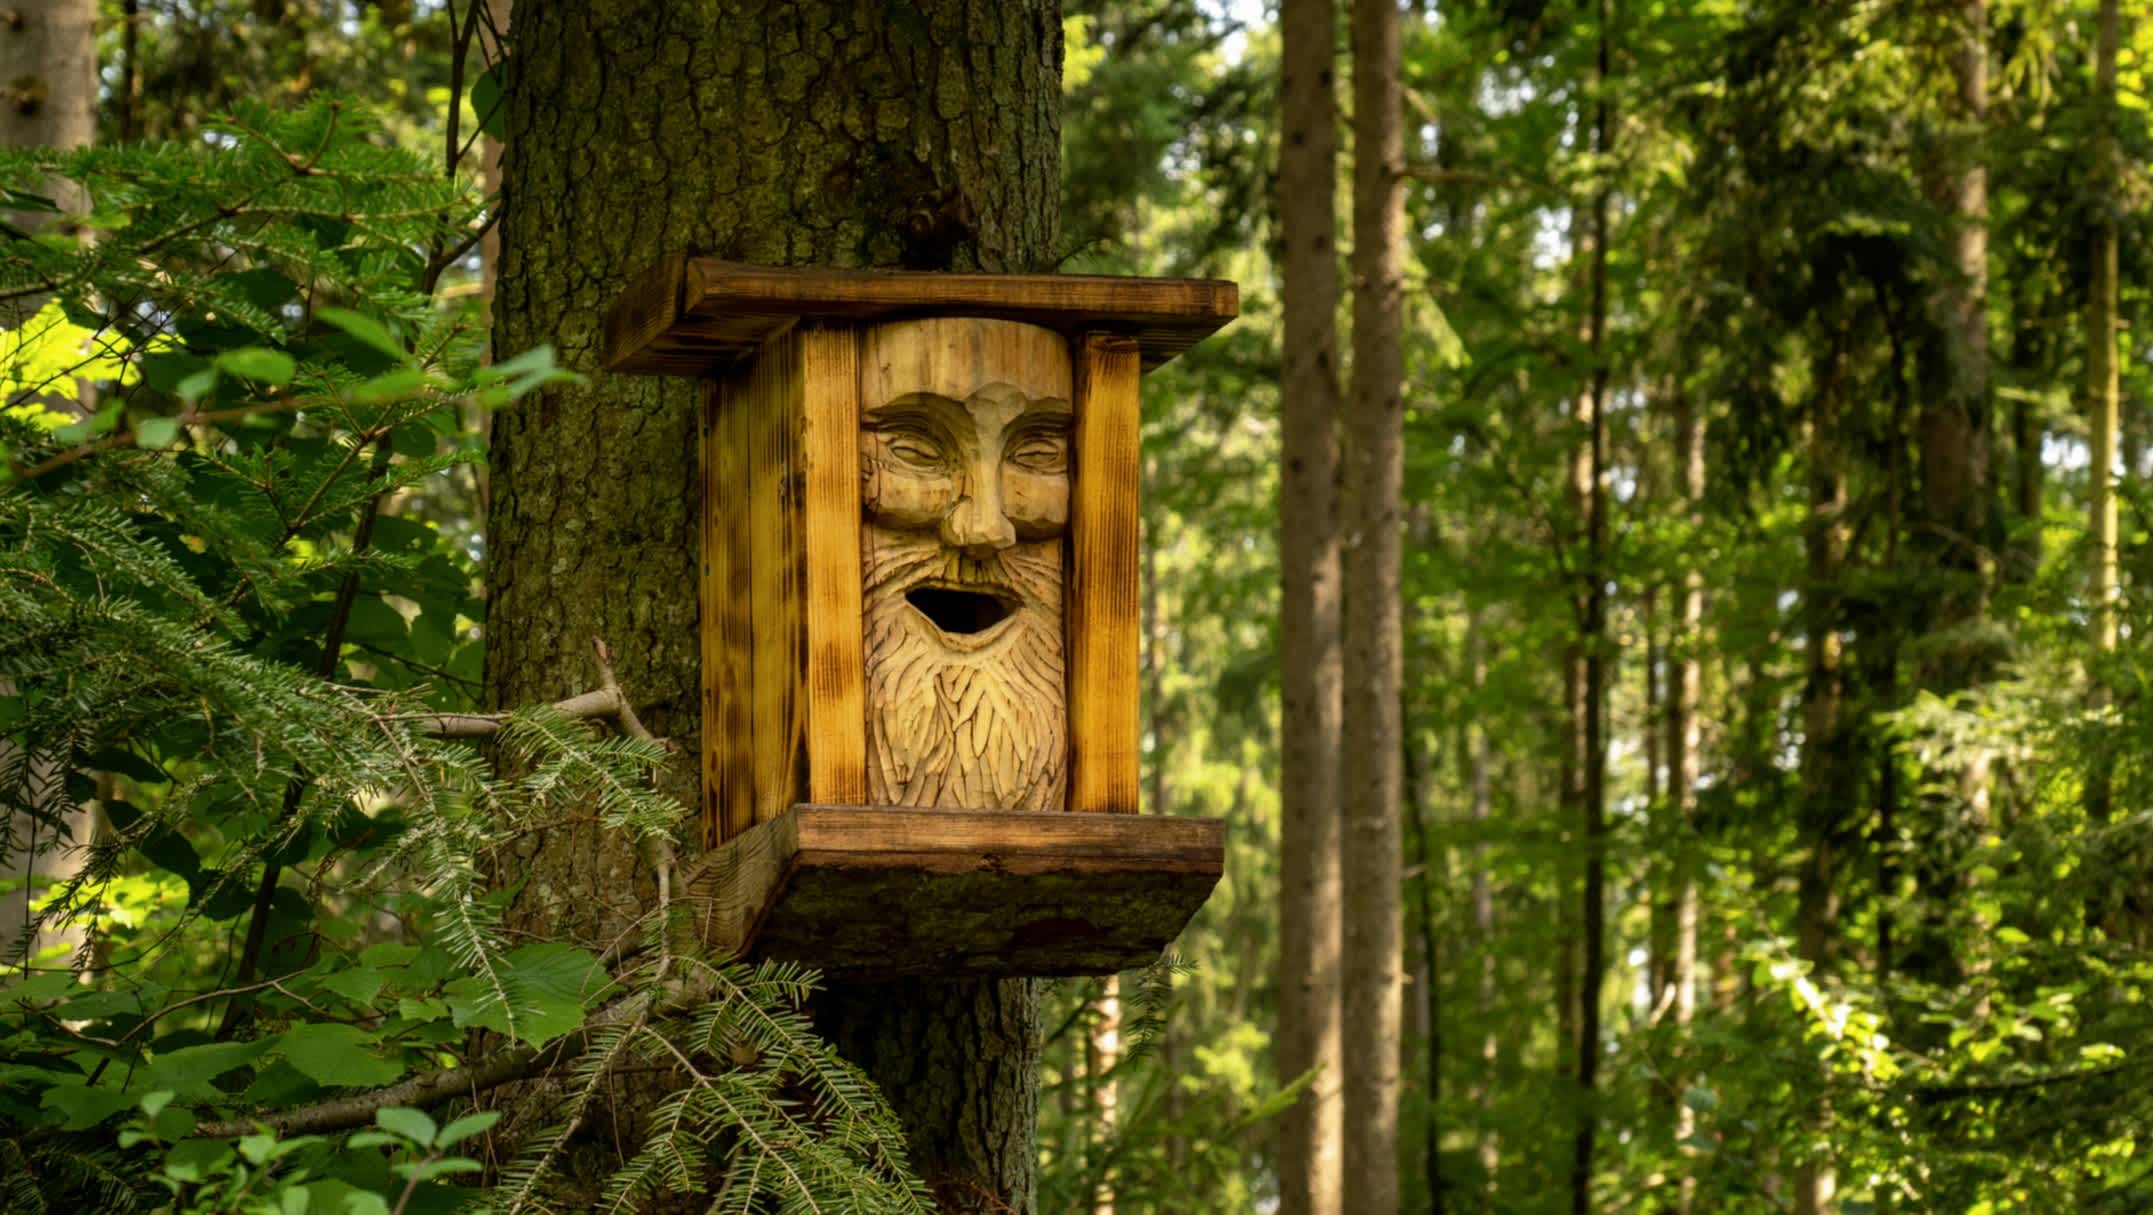 Nistkasten auf einem Baumstamm im Wald, gestaltet mit einem geschnitzten Gesicht